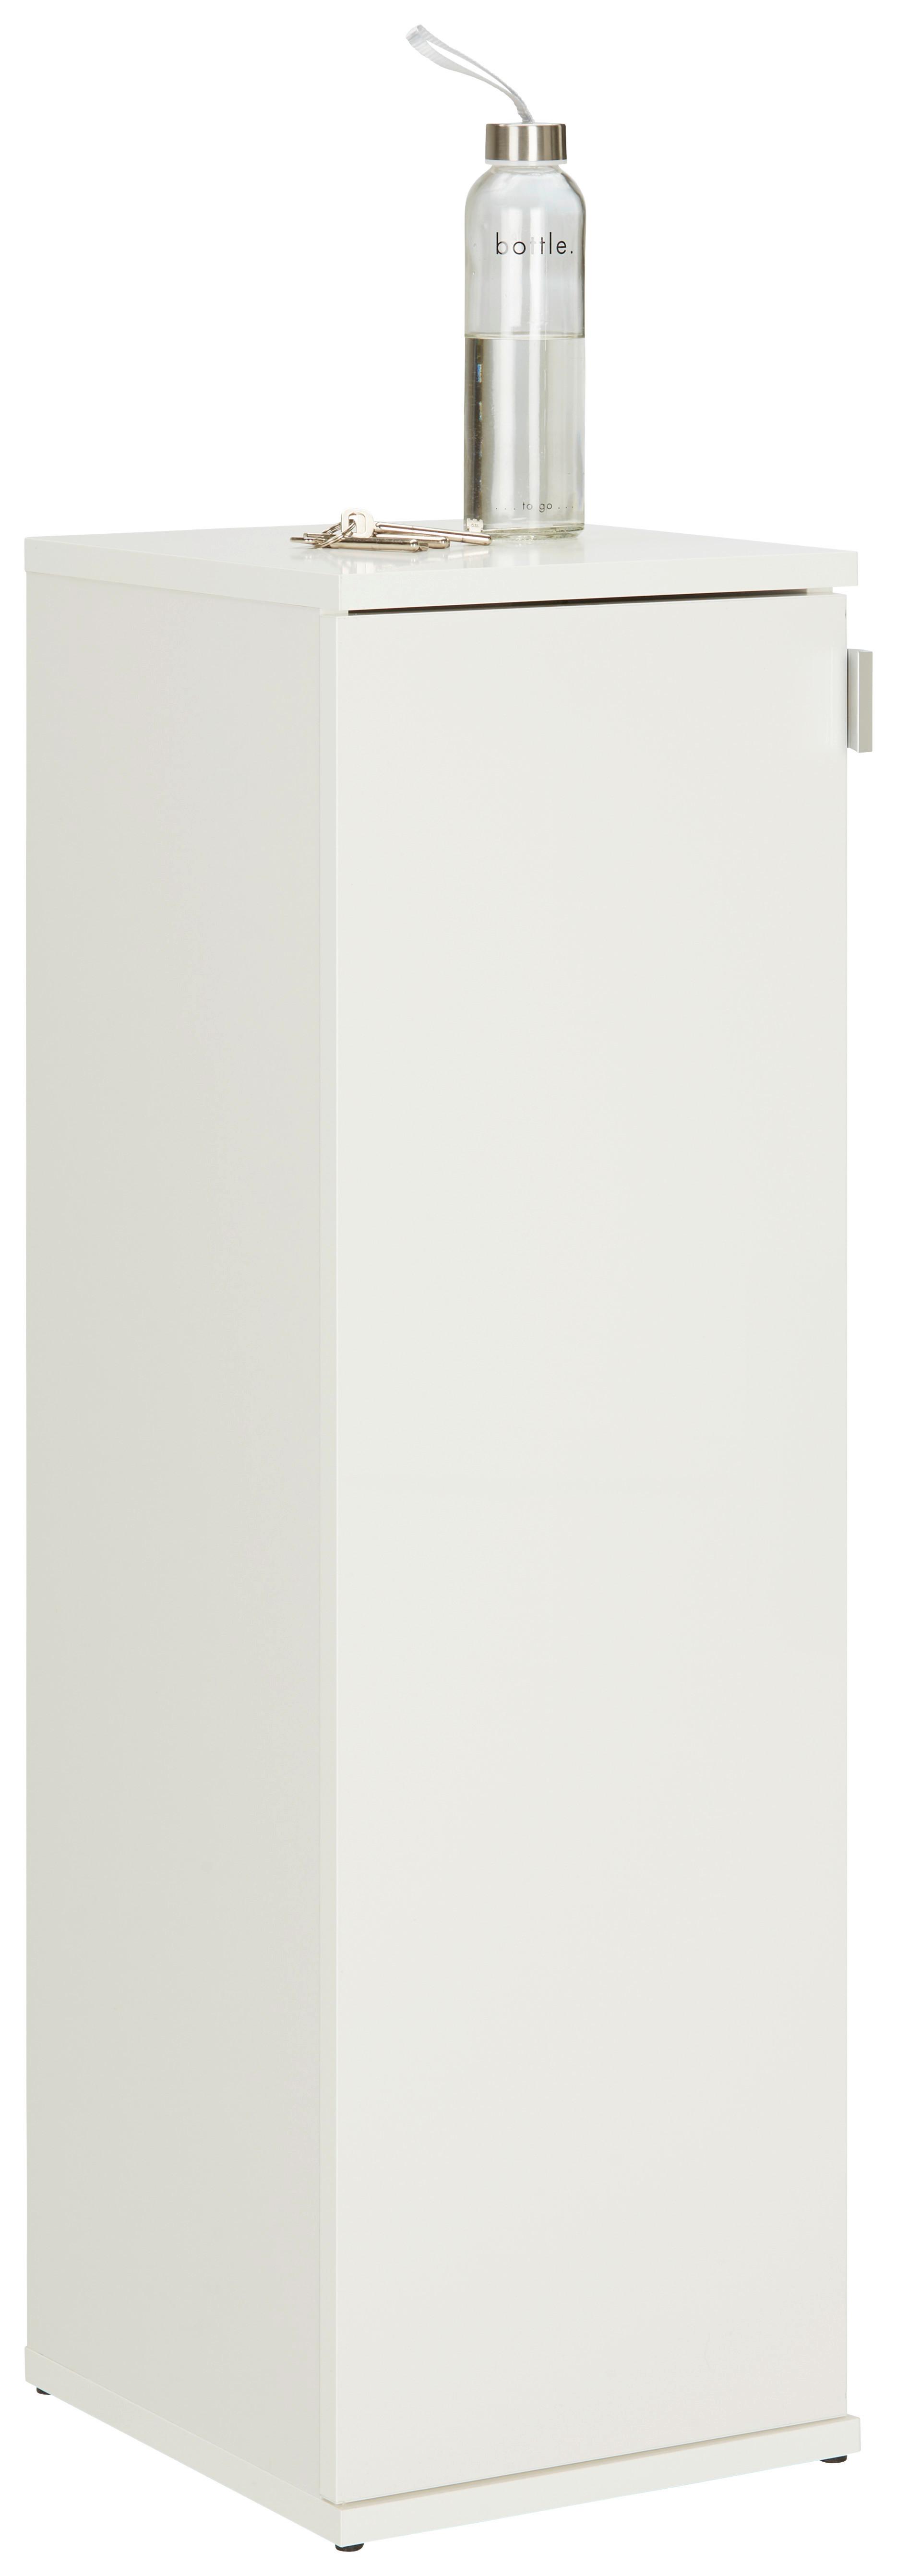 Schuhschrank in Weiß - Chromfarben/Weiß Hochglanz, MODERN, Holzwerkstoff/Metall (30/99/34cm) - Modern Living